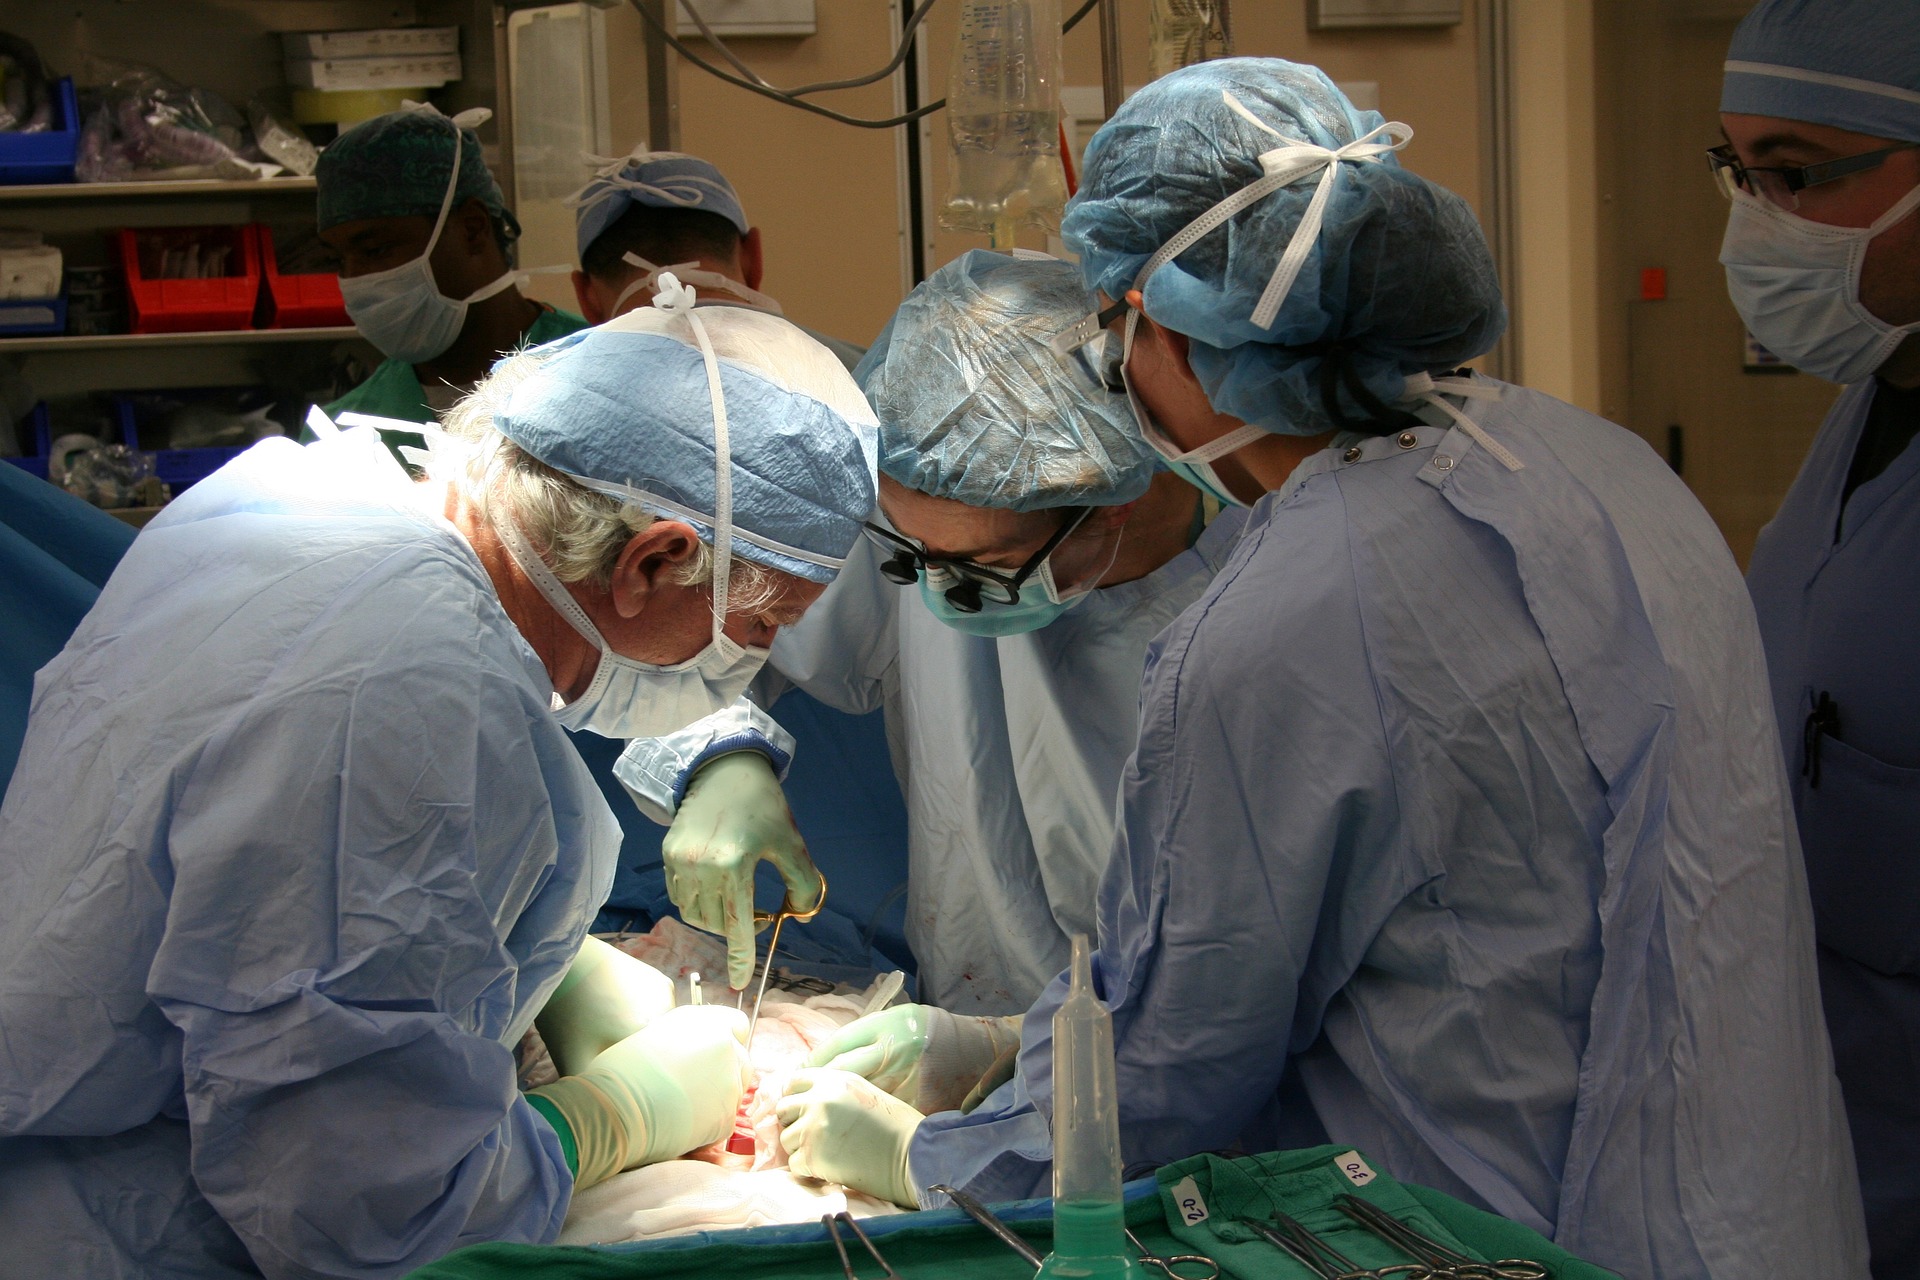 Des chirurgiens en pleine opération ou transplantation d'organe - Image par scotth23 de https://pixabay.com/fr/photos/op%C3%A9ration-donateurs-transplantation-1049588/